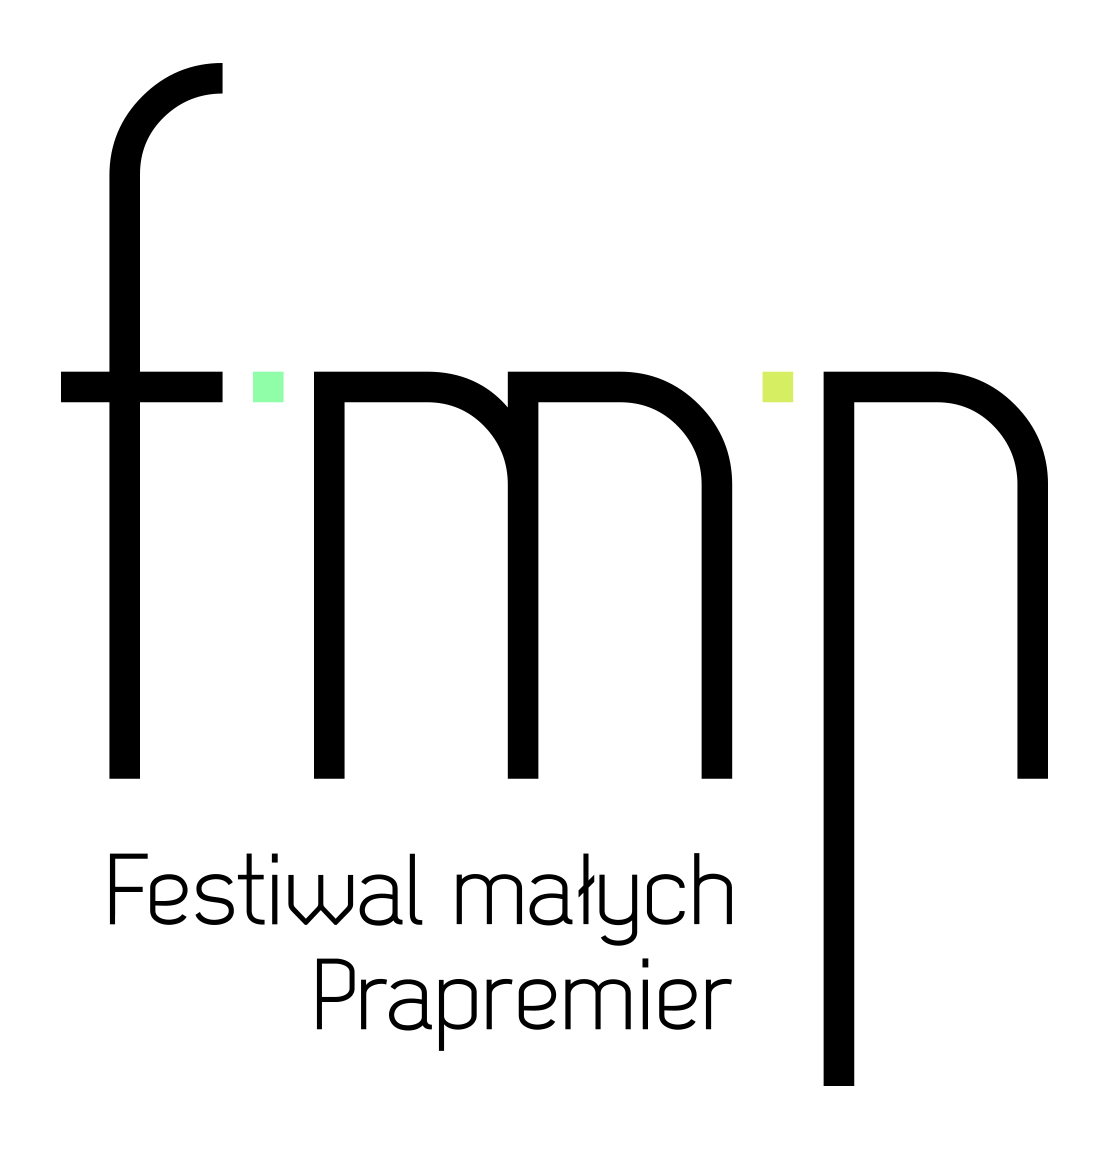 Festiwal małych Prapremier, logo (źródło: mat. prasowe)